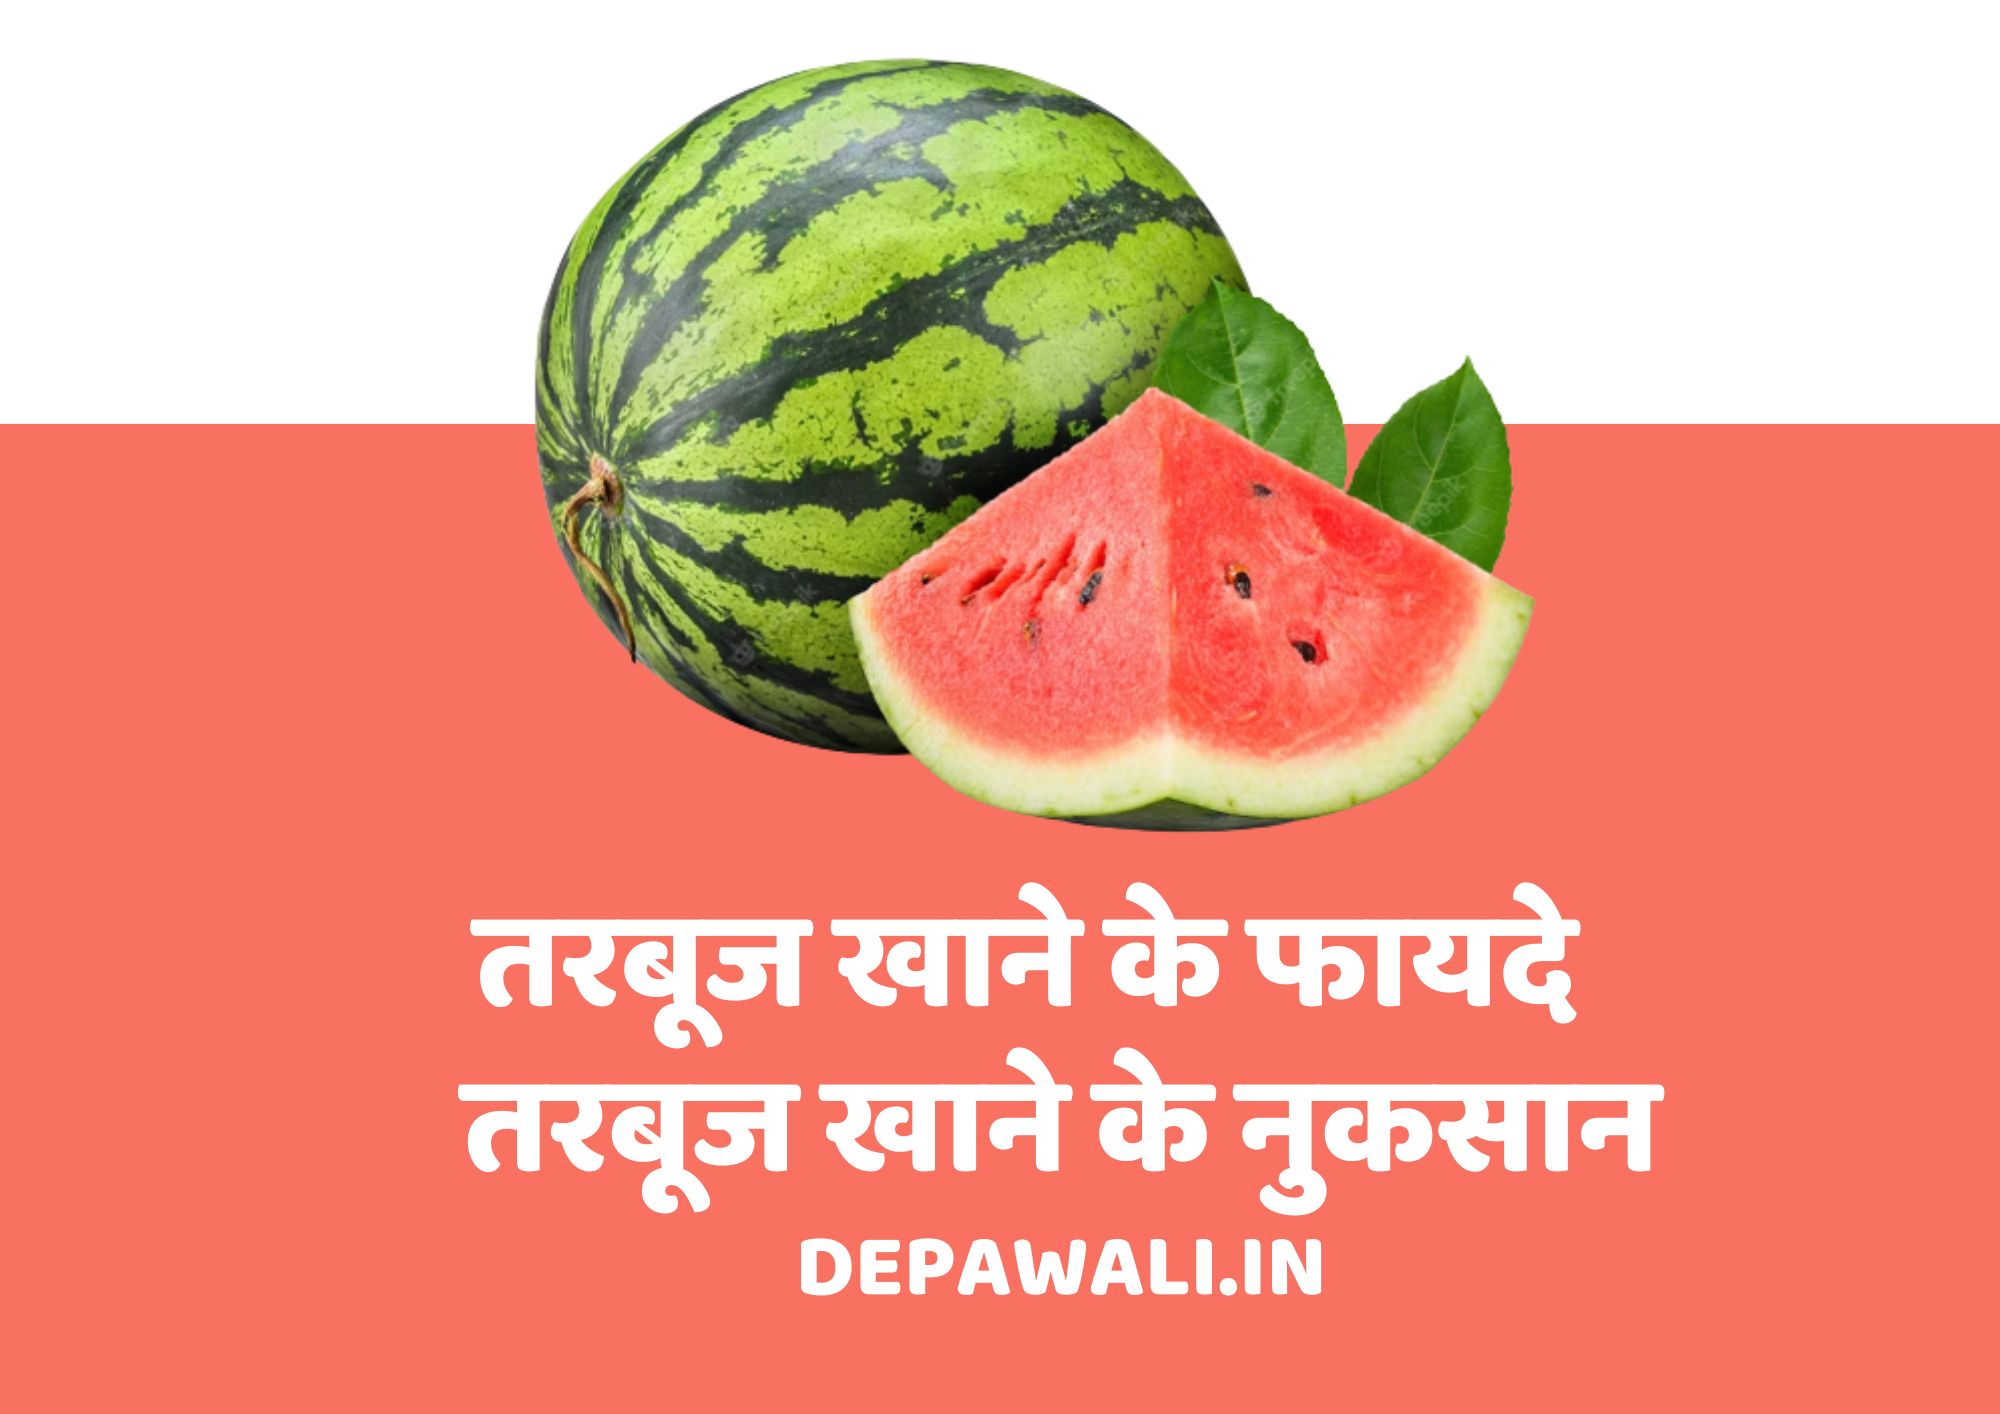 तरबूज क्या है, तरबूज खाने के फायदे, तरबूज खाने के नुकसान - Tarbuj Khane Ke Fayde Aur Nuksan - Watermelon In Hindi